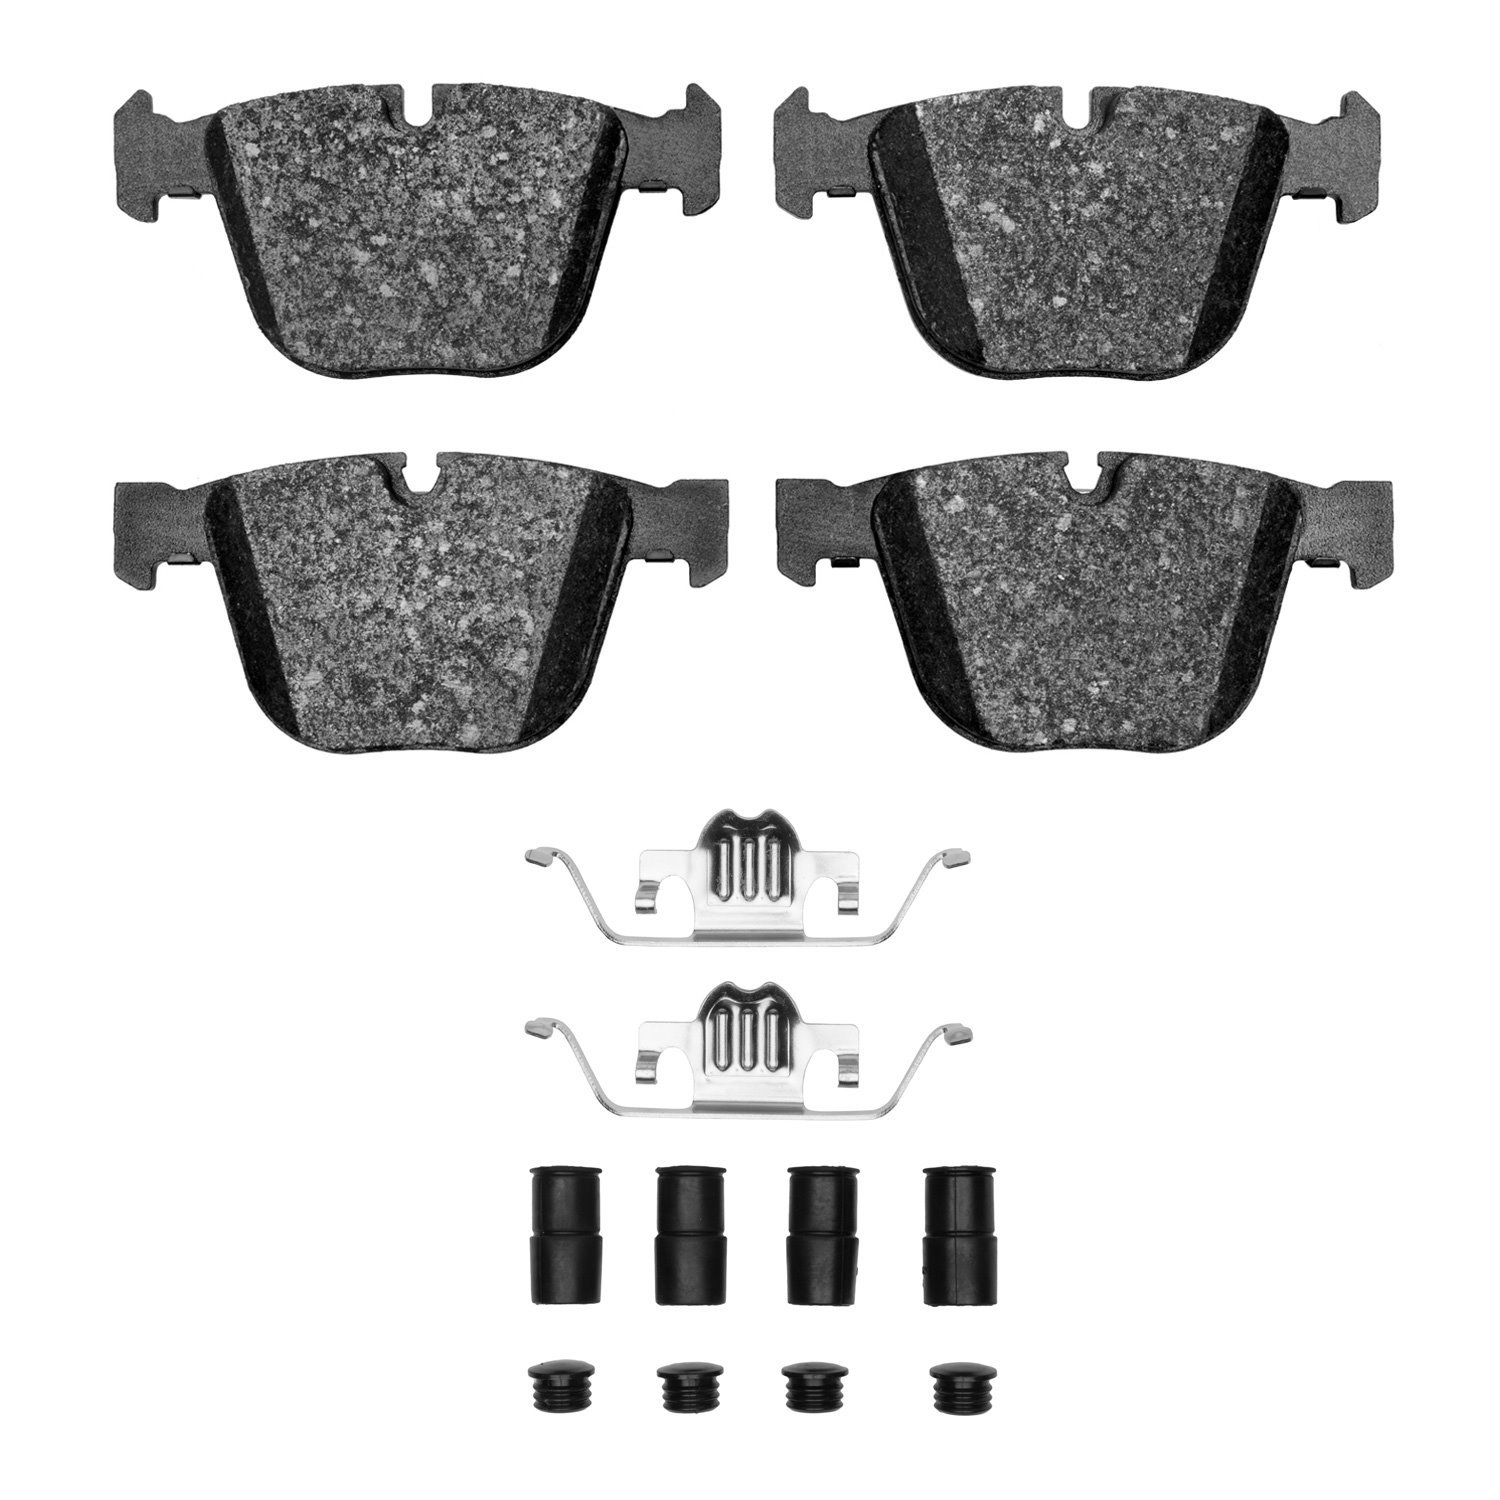 1311-0919-22 3000-Series Semi-Metallic Brake Pads & Hardware Kit, 2010-2019 BMW, Position: Rear